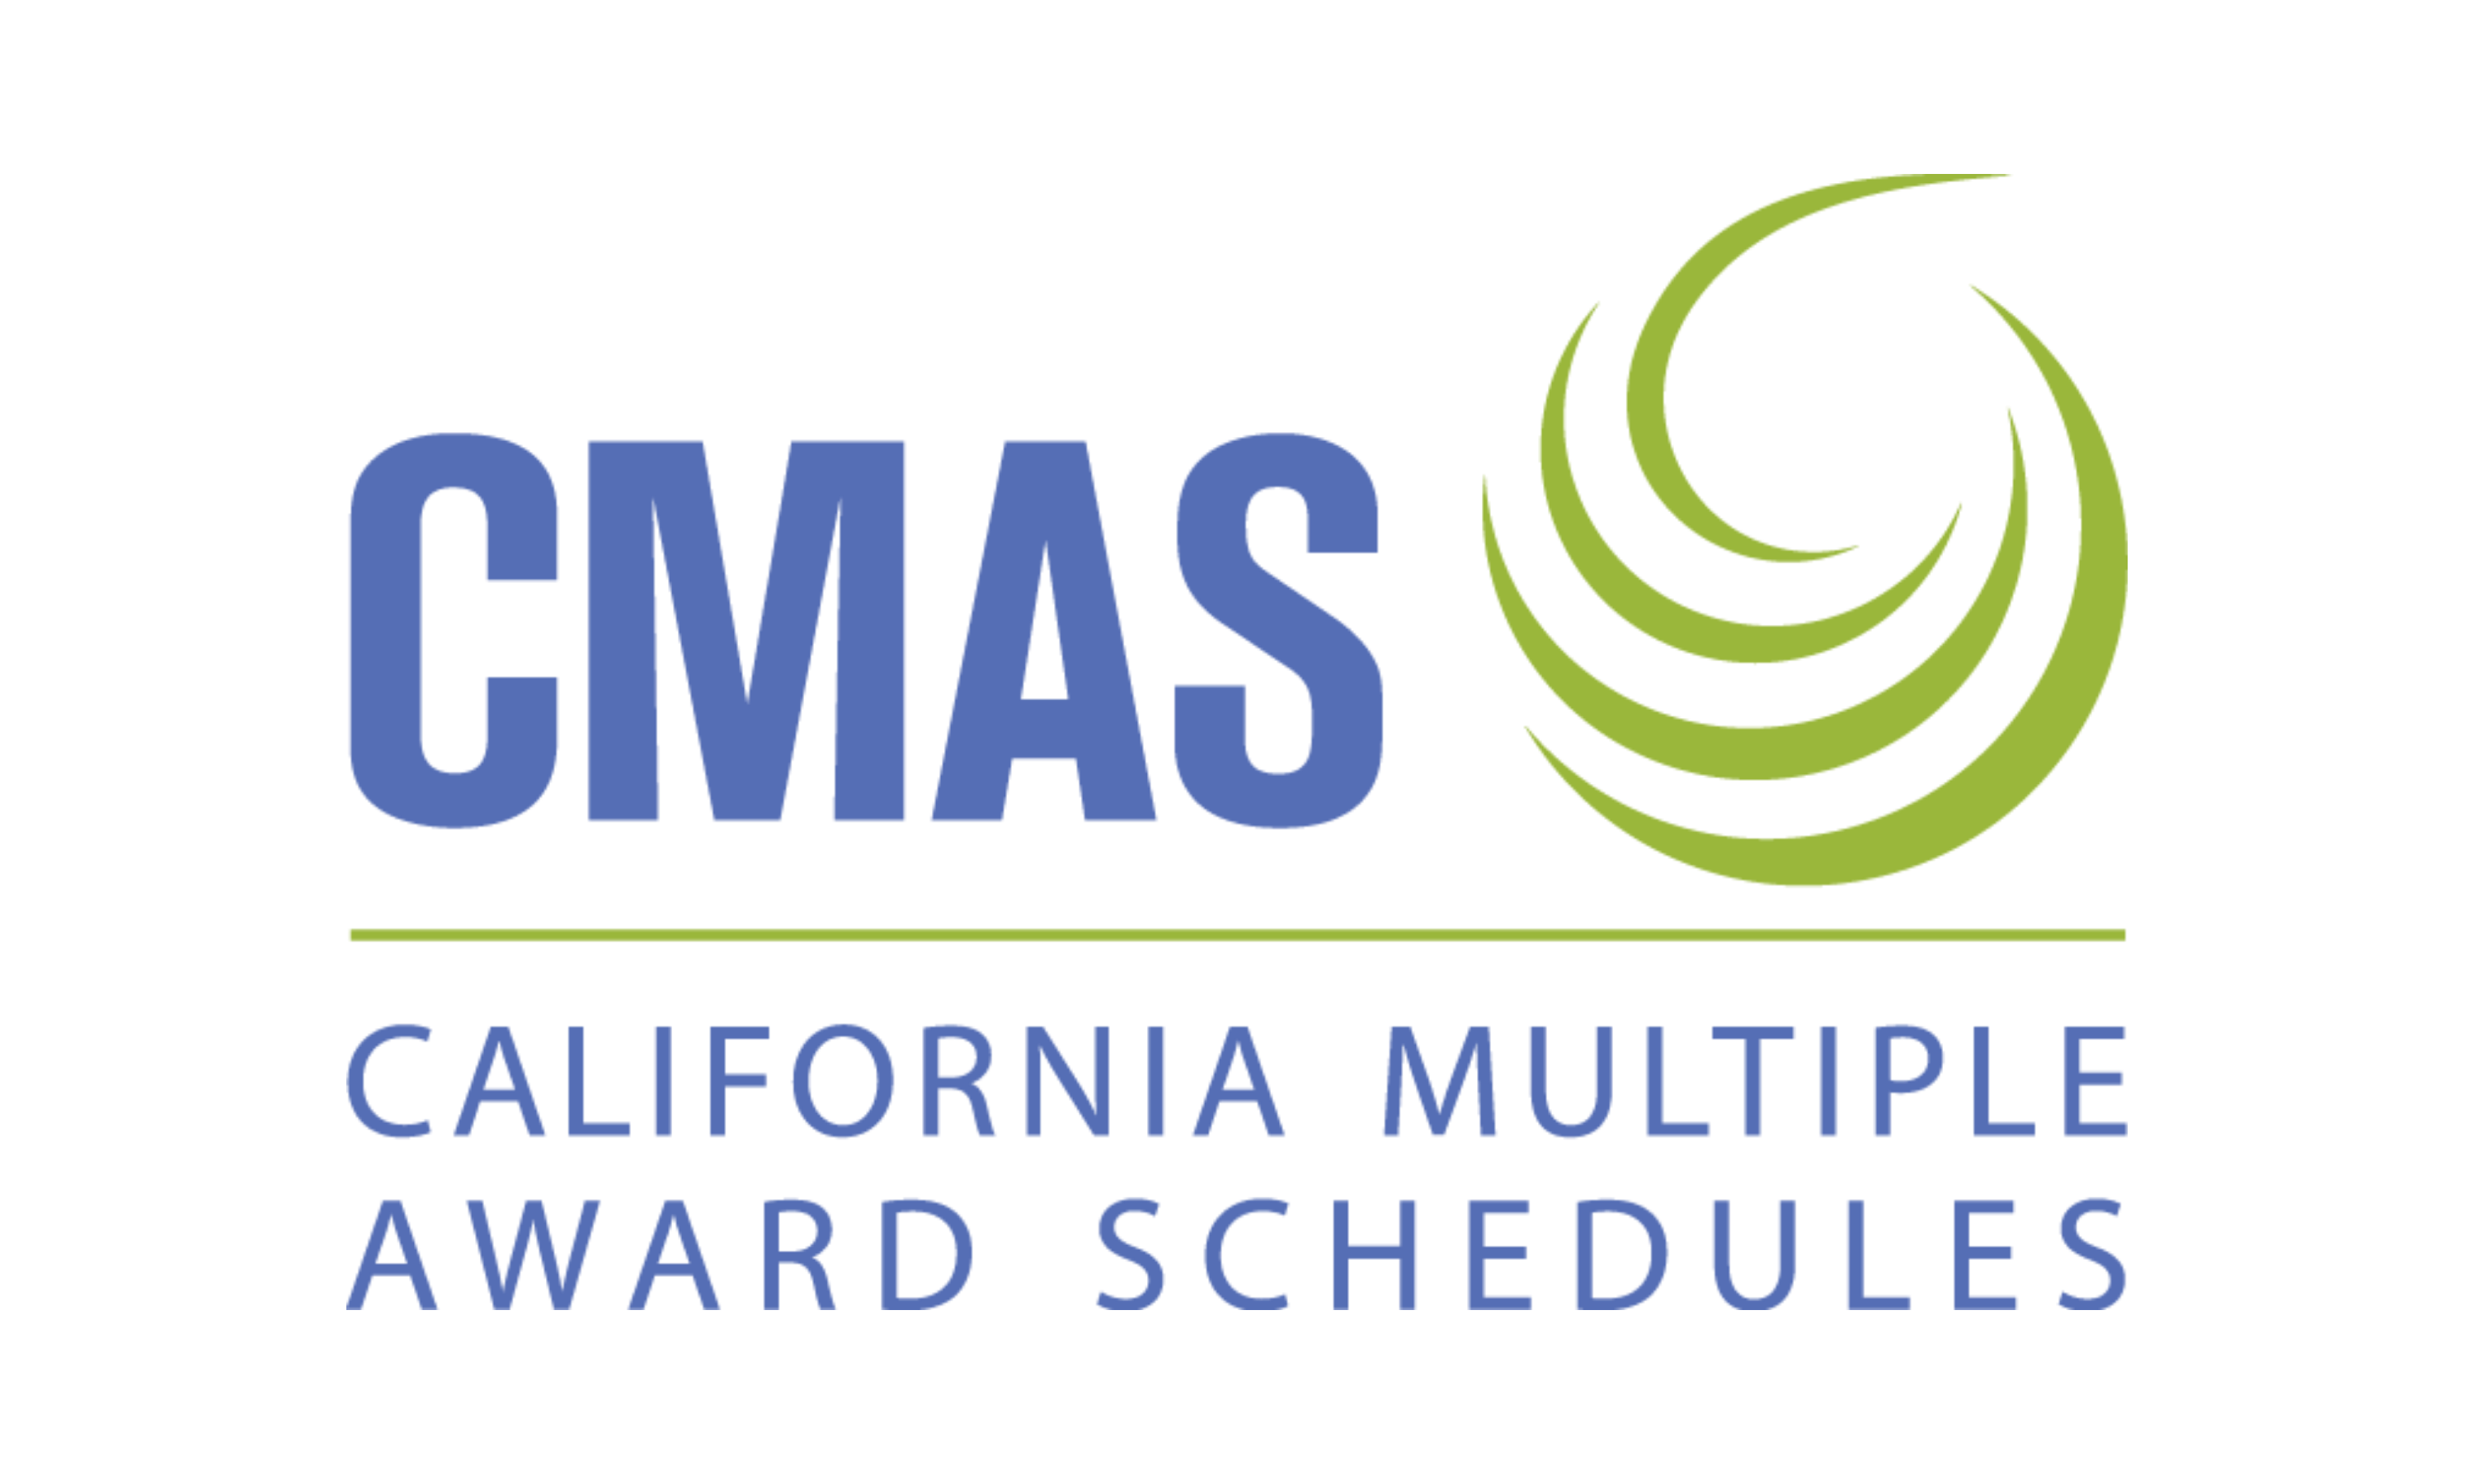 cmas-california-multiple-award-schedules-logo2